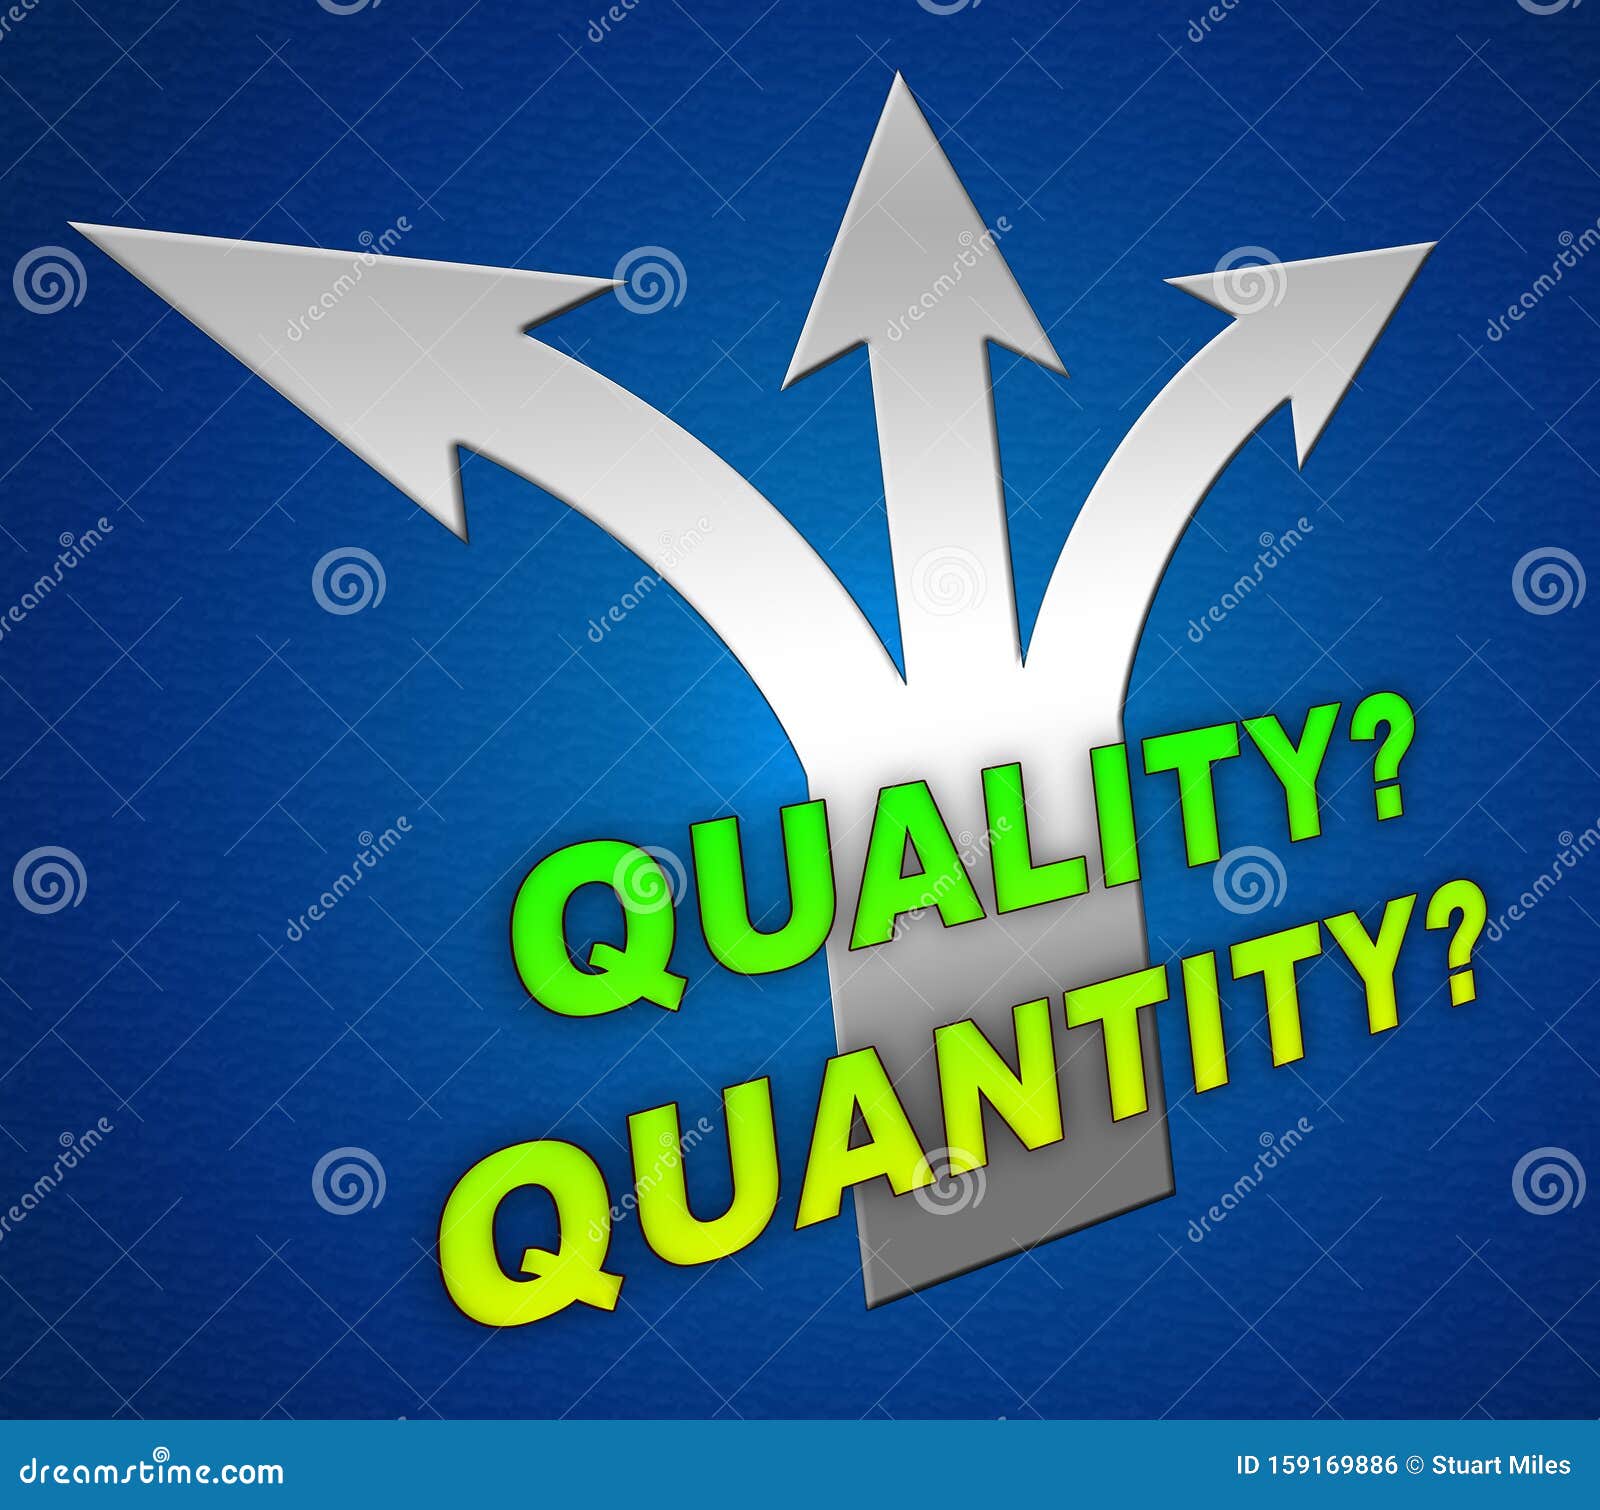 V quality. Quantity vs quality.